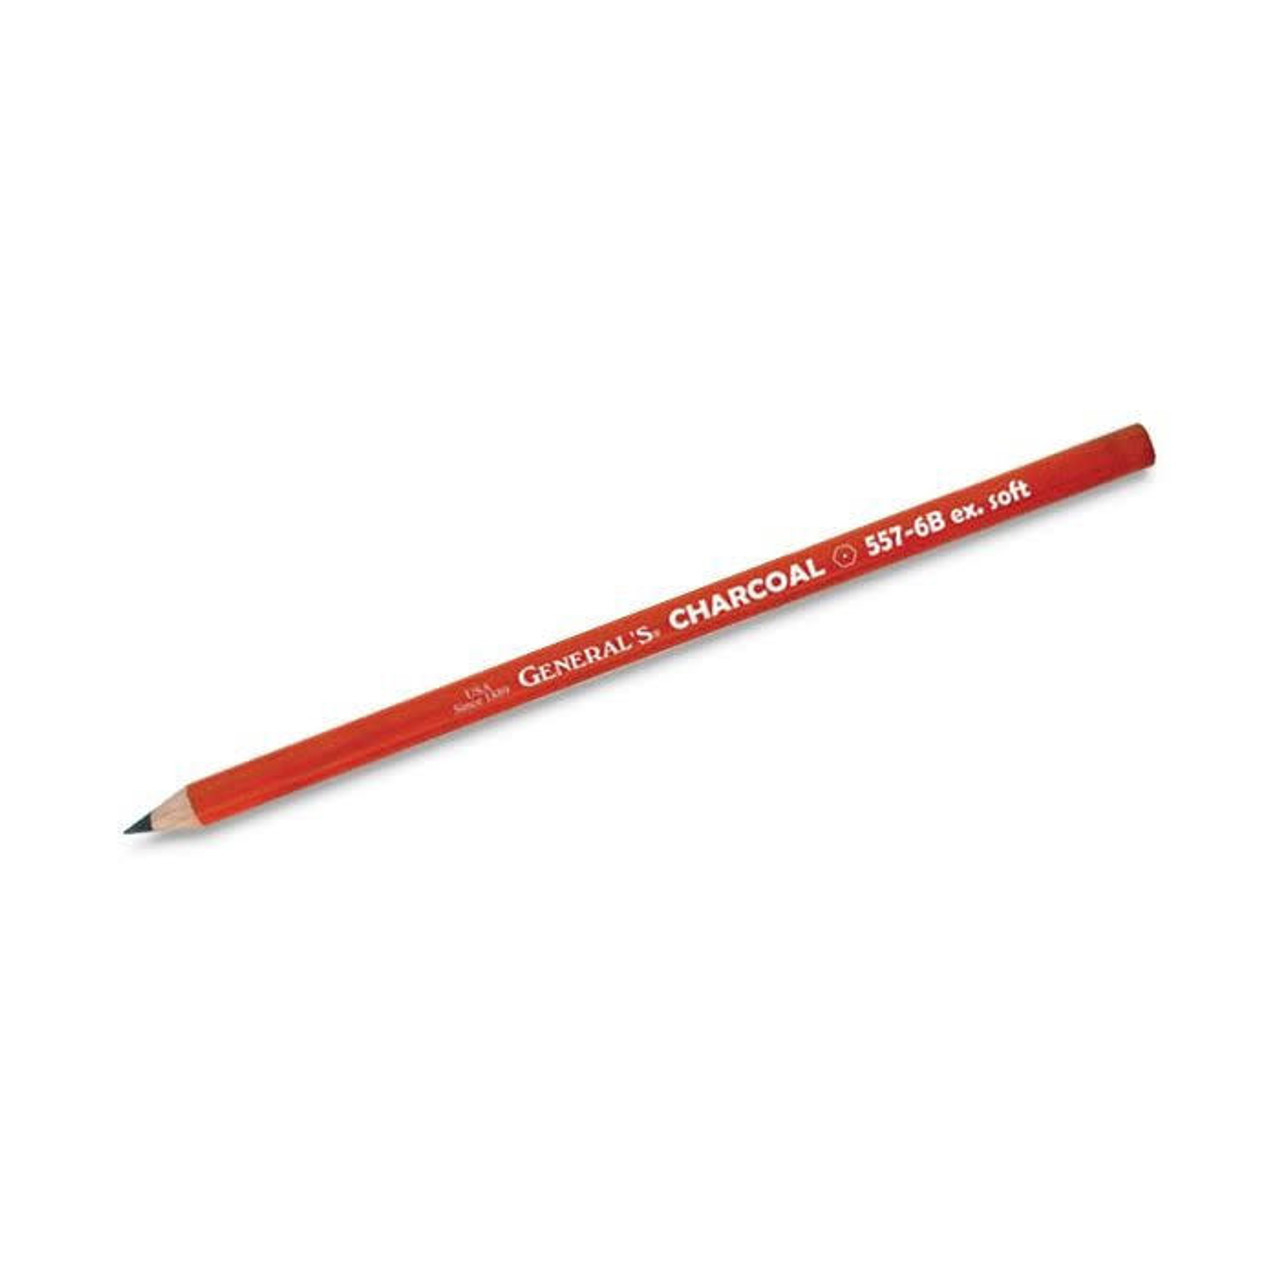 General Pencil Company : Charcoal Pencil : 6B Extra Soft - General